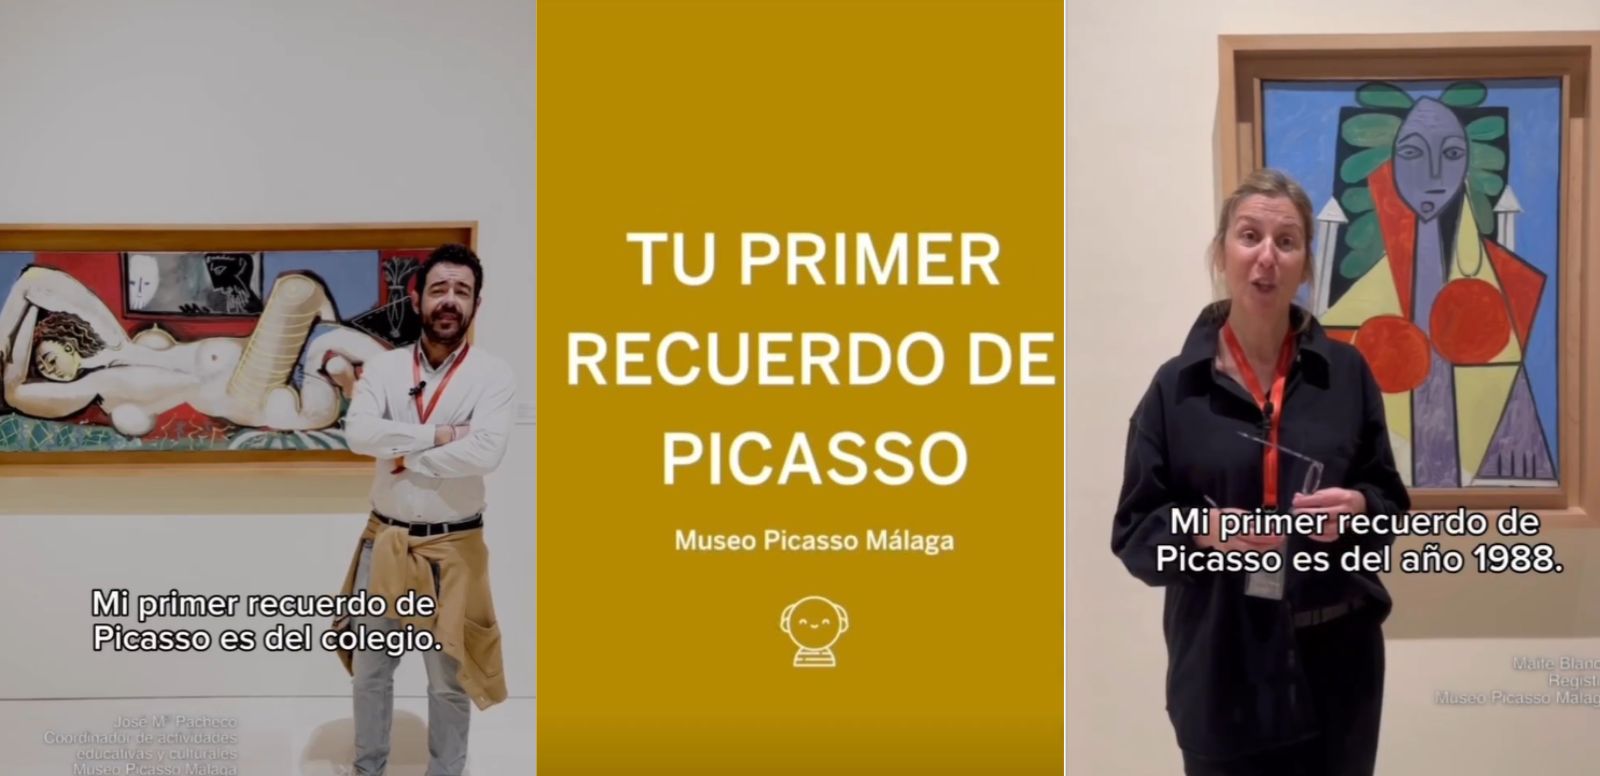 Picasso en tu vida. Museo Picasso Málaga